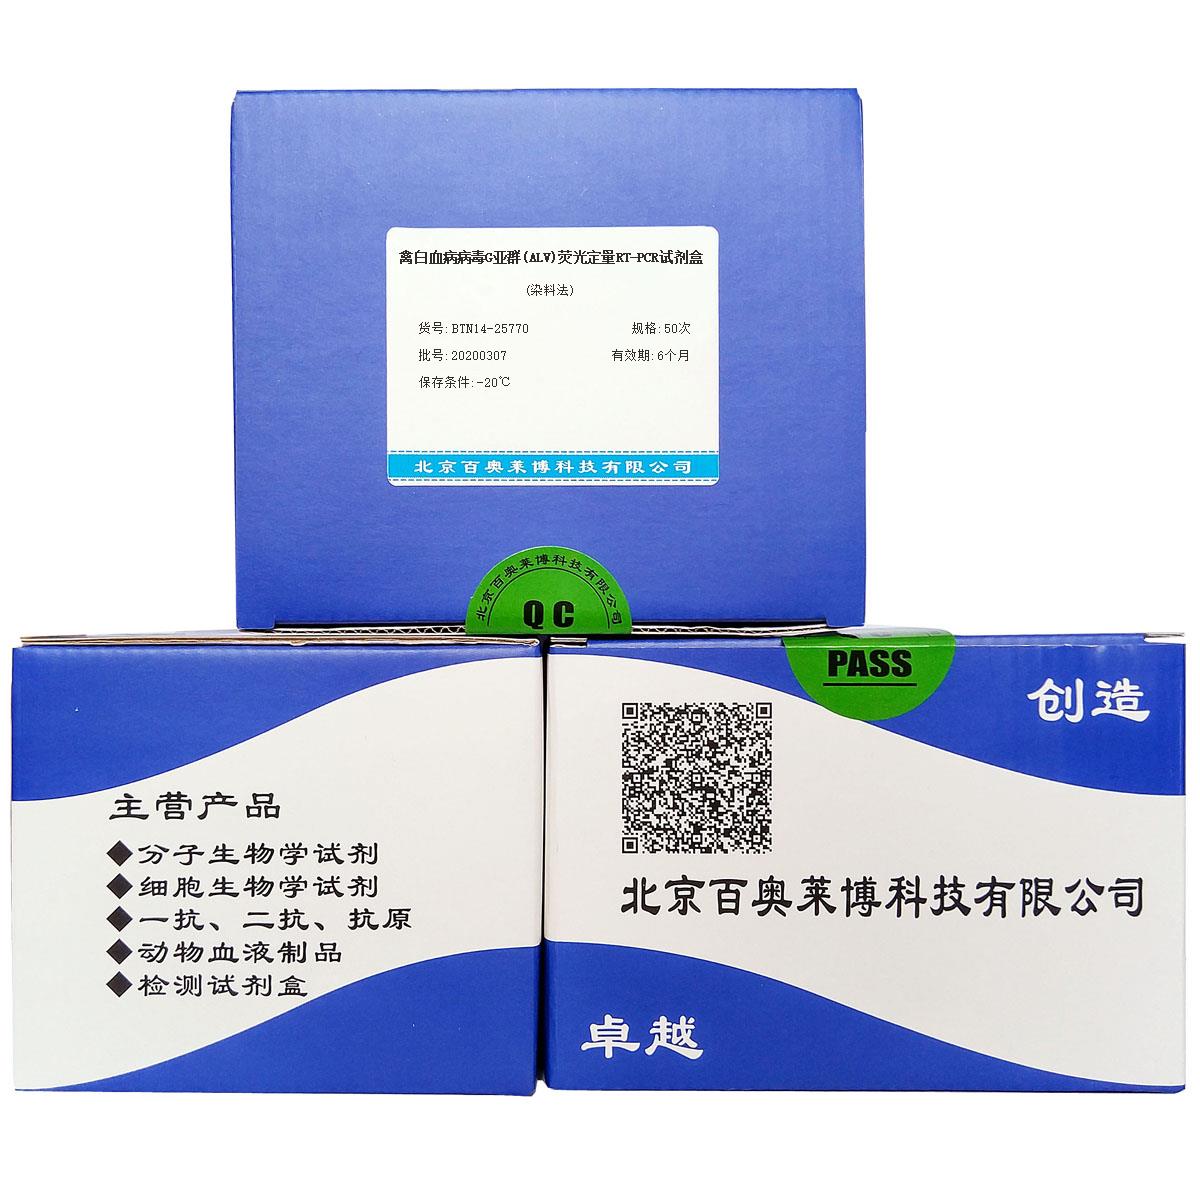 禽白血病病毒G亚群(ALV)荧光定量RT-PCR试剂盒(染料法)